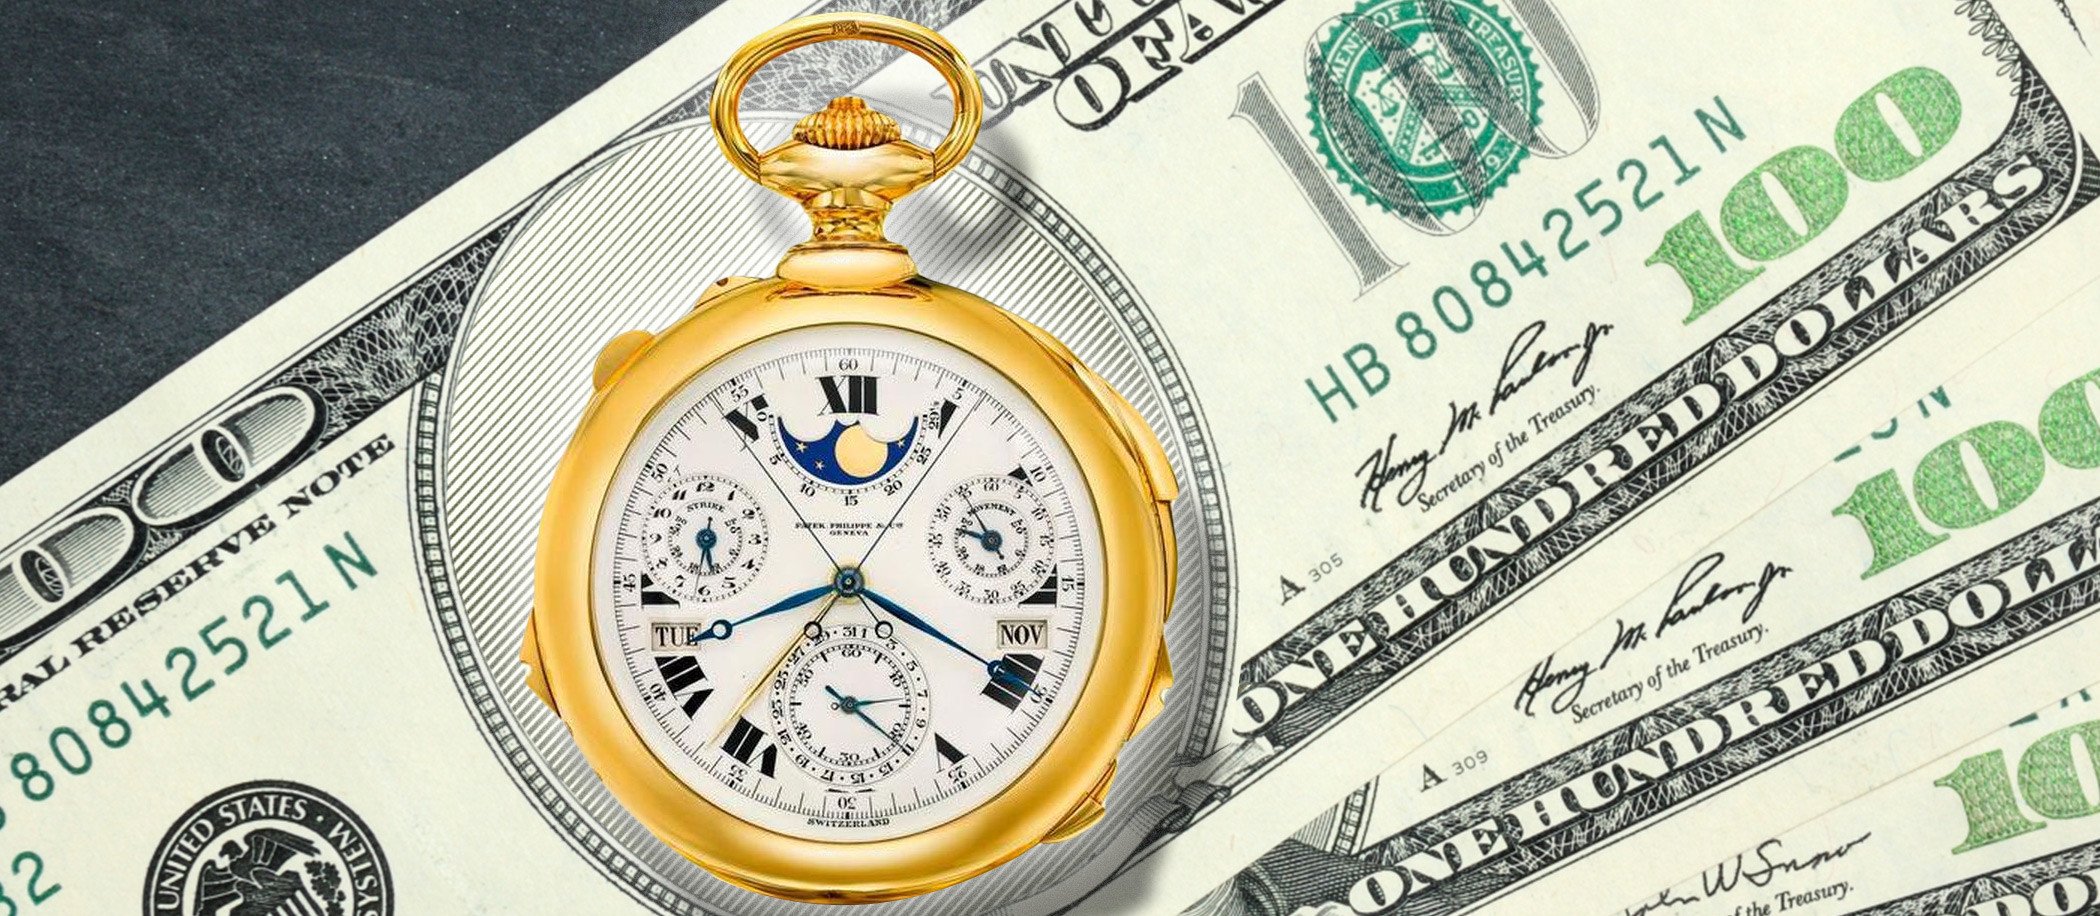 Najdroższe zegarki świata!